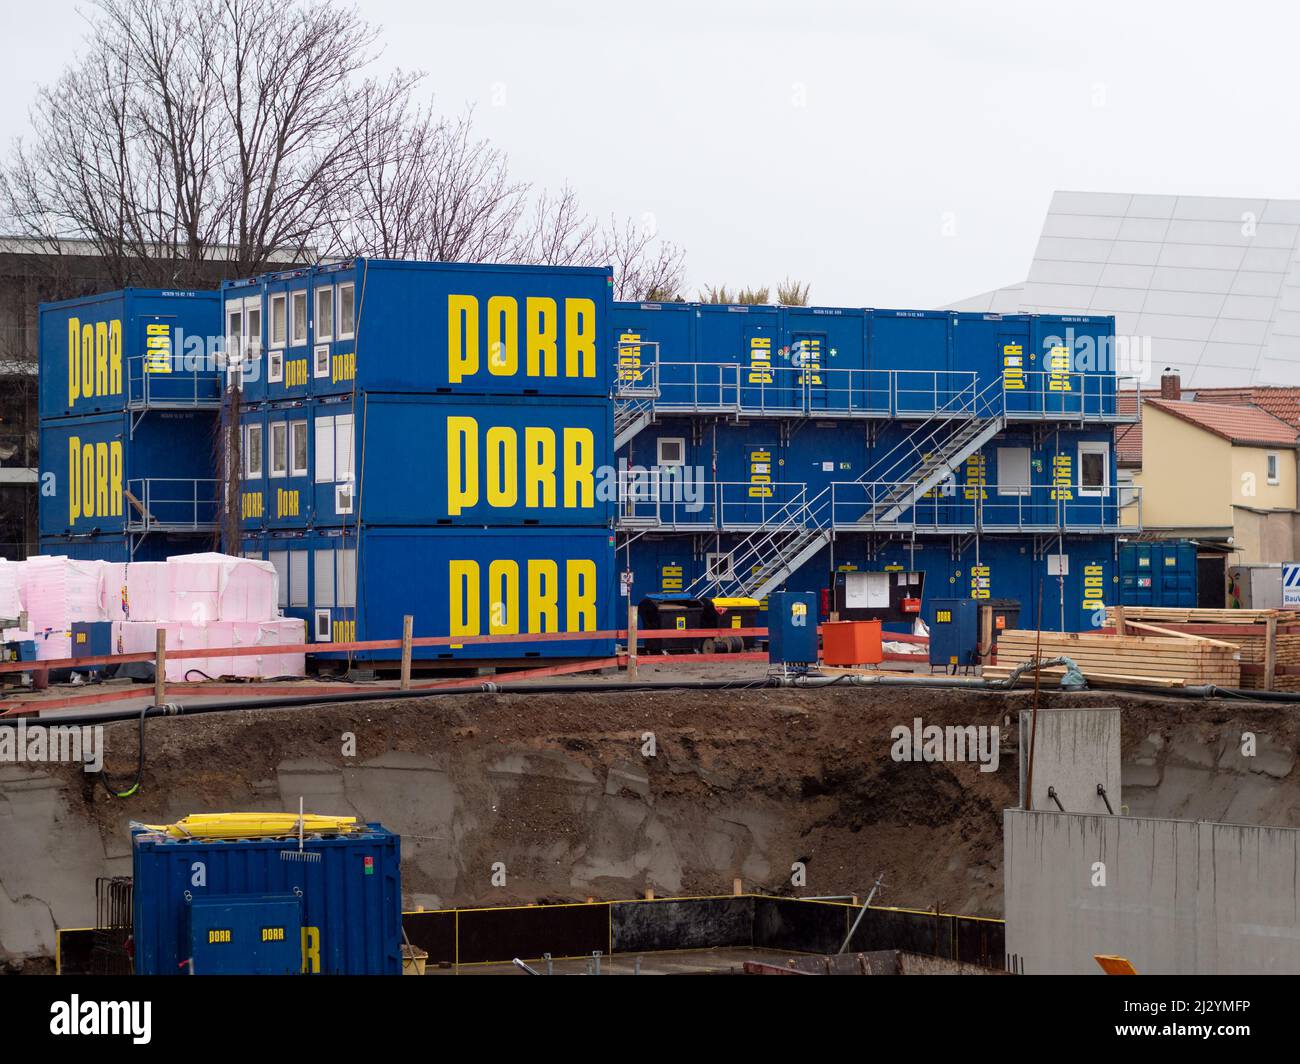 Auf einer Baustelle in der Stadt stapelten die Baukabinen der Firma PORR aufeinander. Blauer Behälter für Arbeiter und Materialien auf dem Boden. Stockfoto